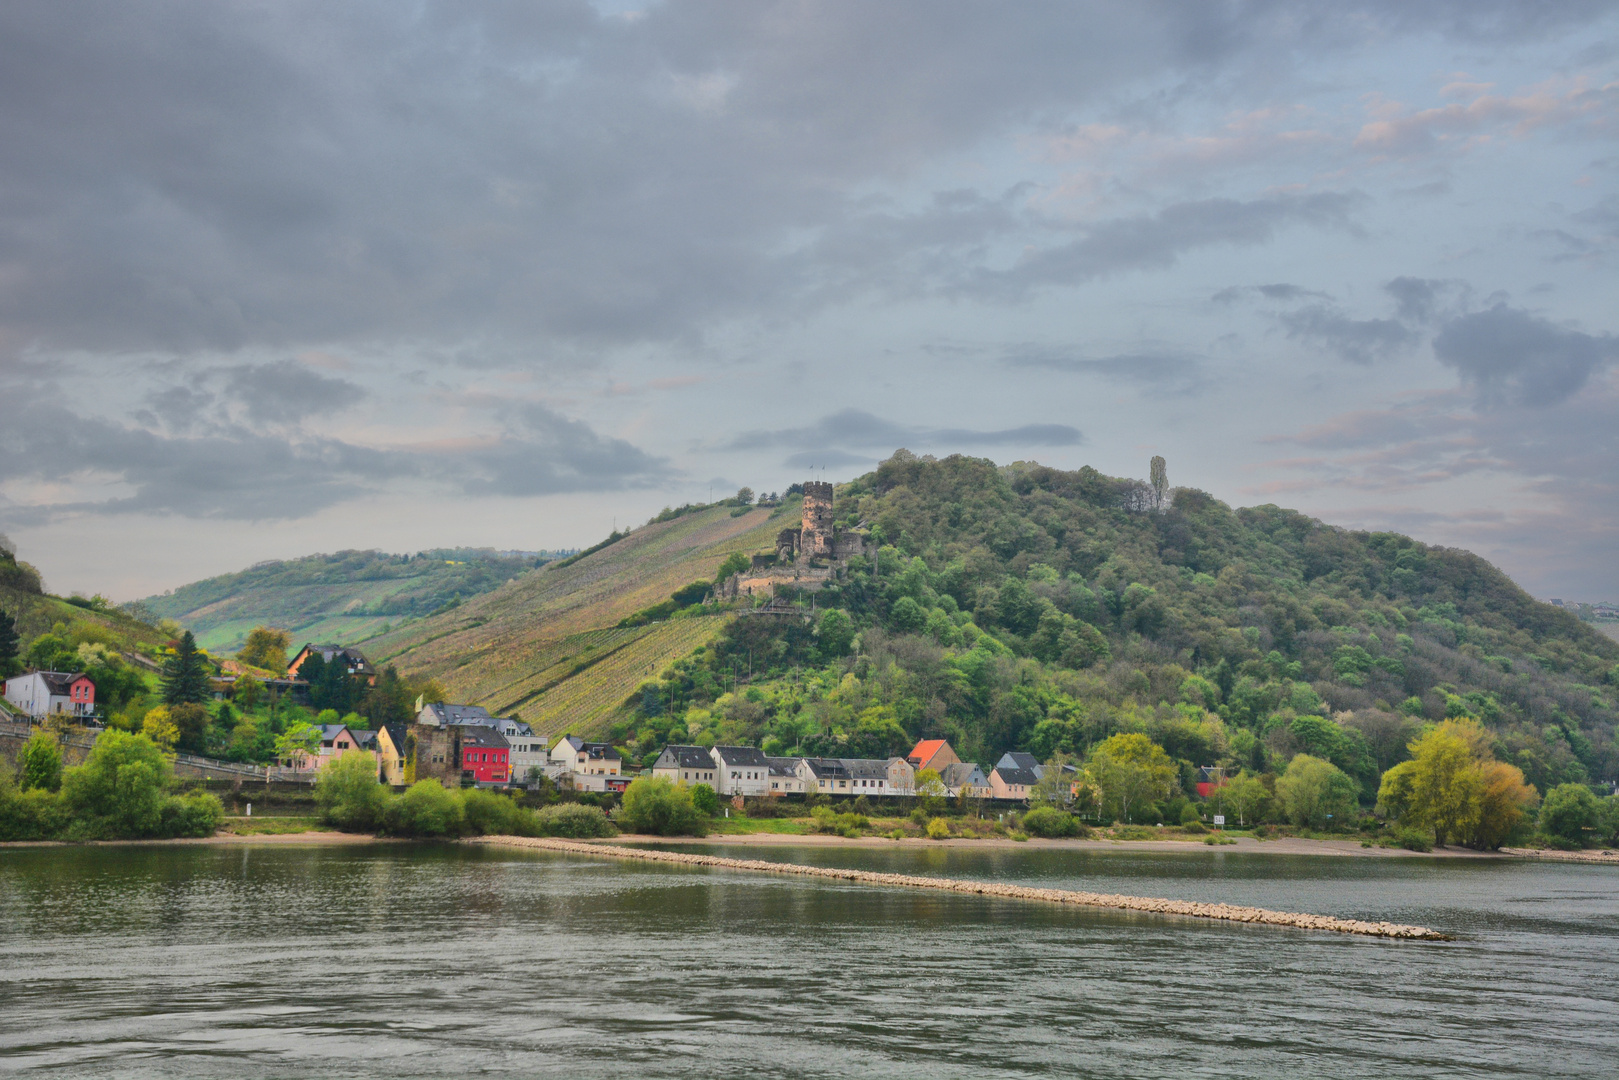 Romantischer Rhein